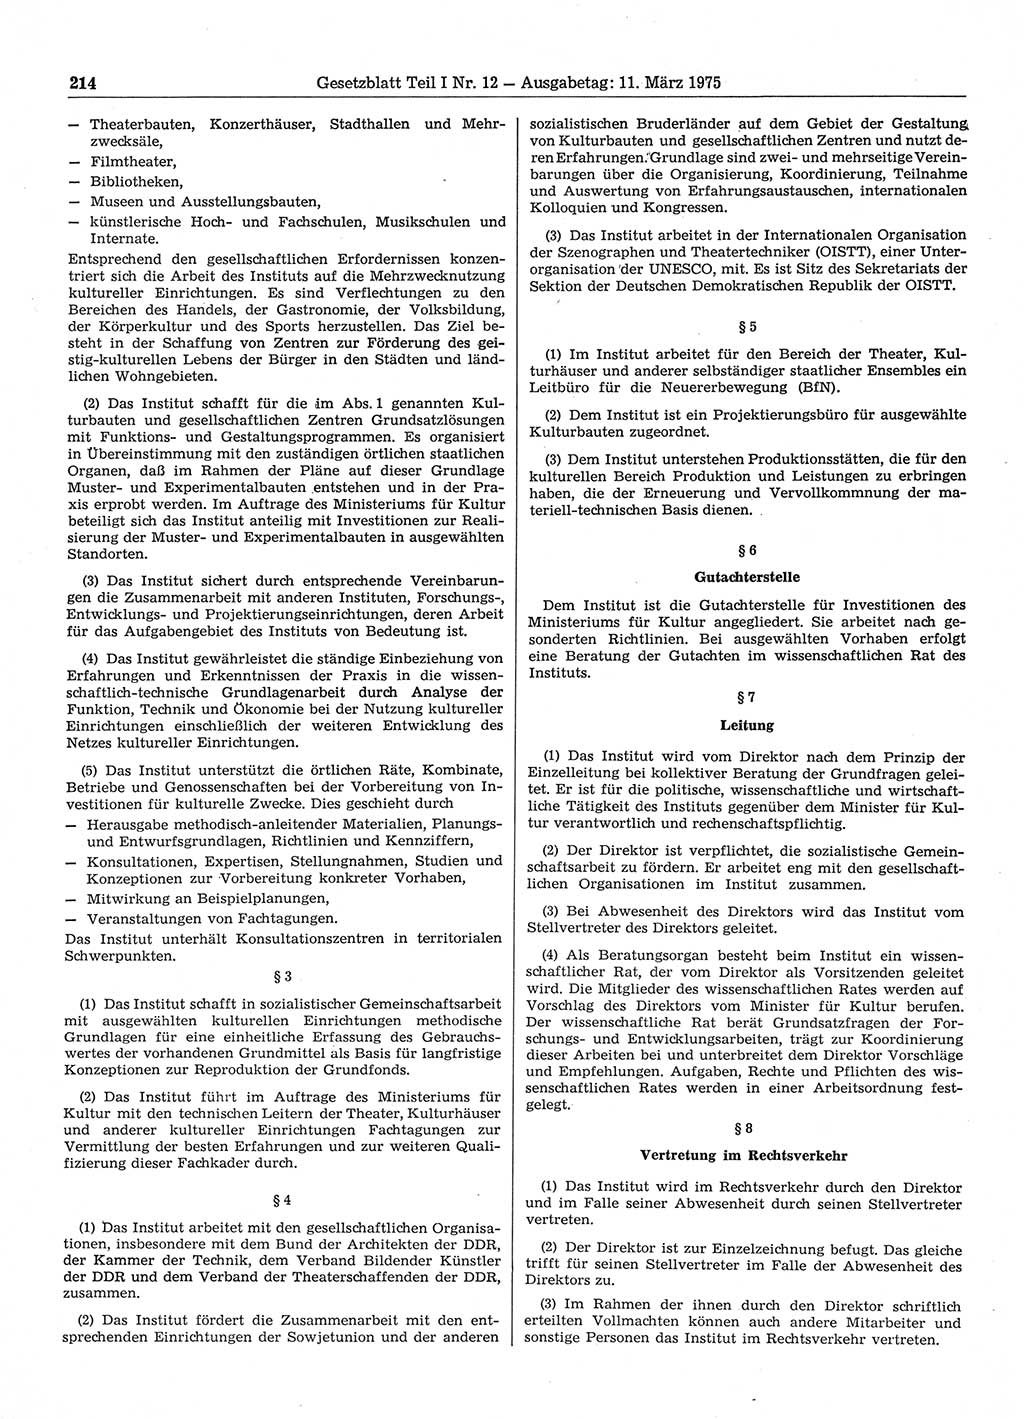 Gesetzblatt (GBl.) der Deutschen Demokratischen Republik (DDR) Teil Ⅰ 1975, Seite 214 (GBl. DDR Ⅰ 1975, S. 214)